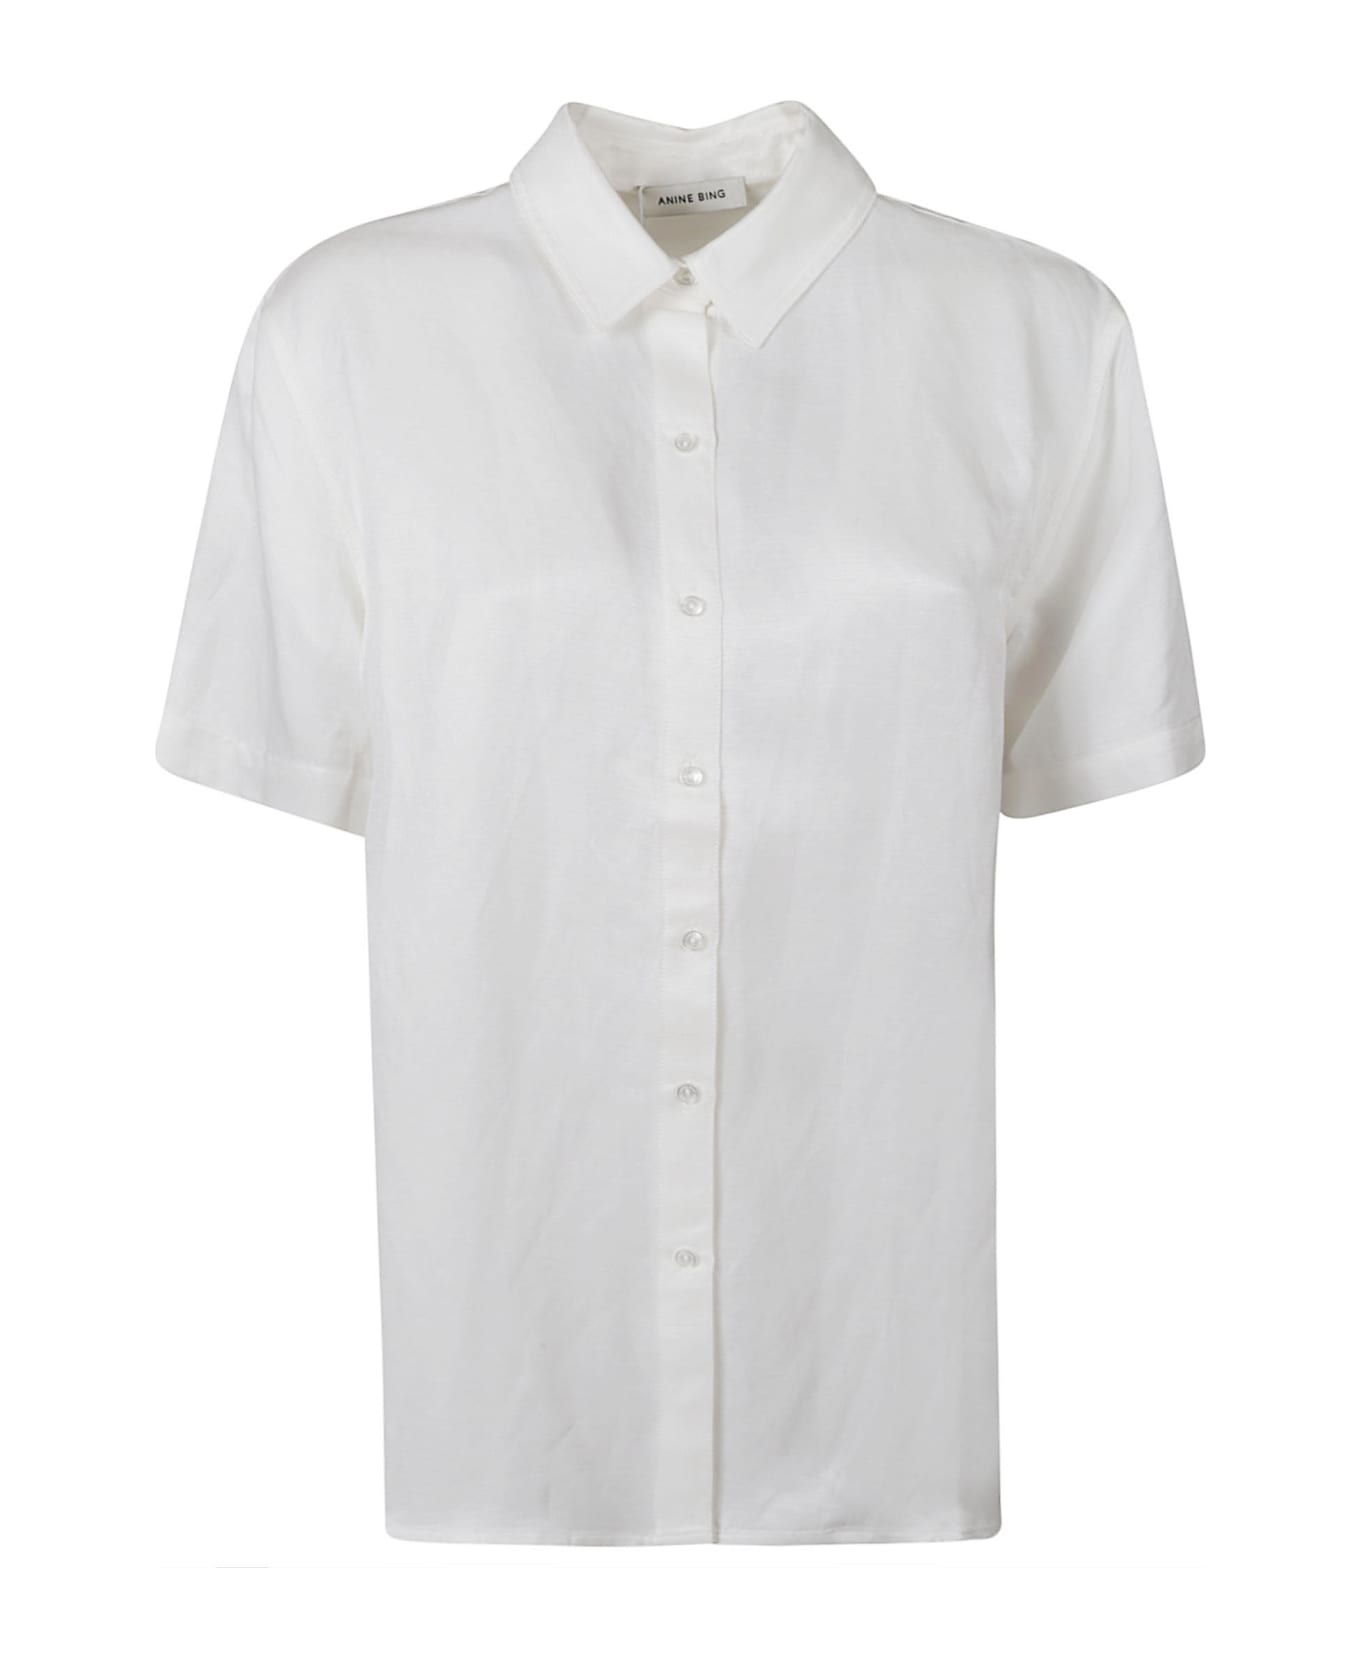 Anine Bing Short-sleeved Plain Shirt - White シャツ